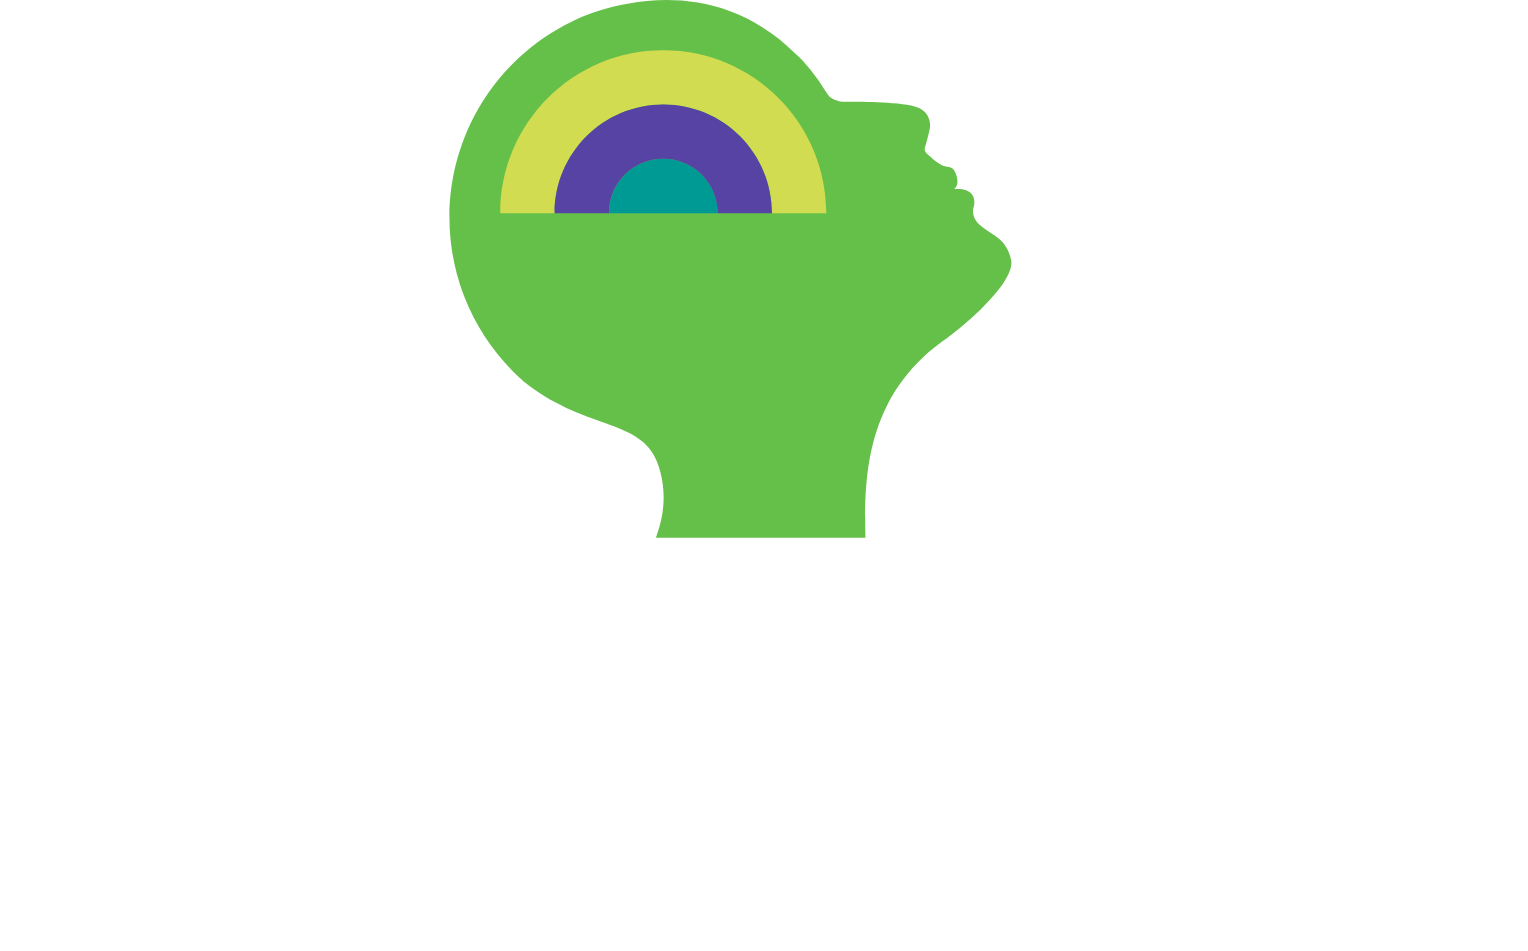 Equasens logo large for dark backgrounds (transparent PNG)